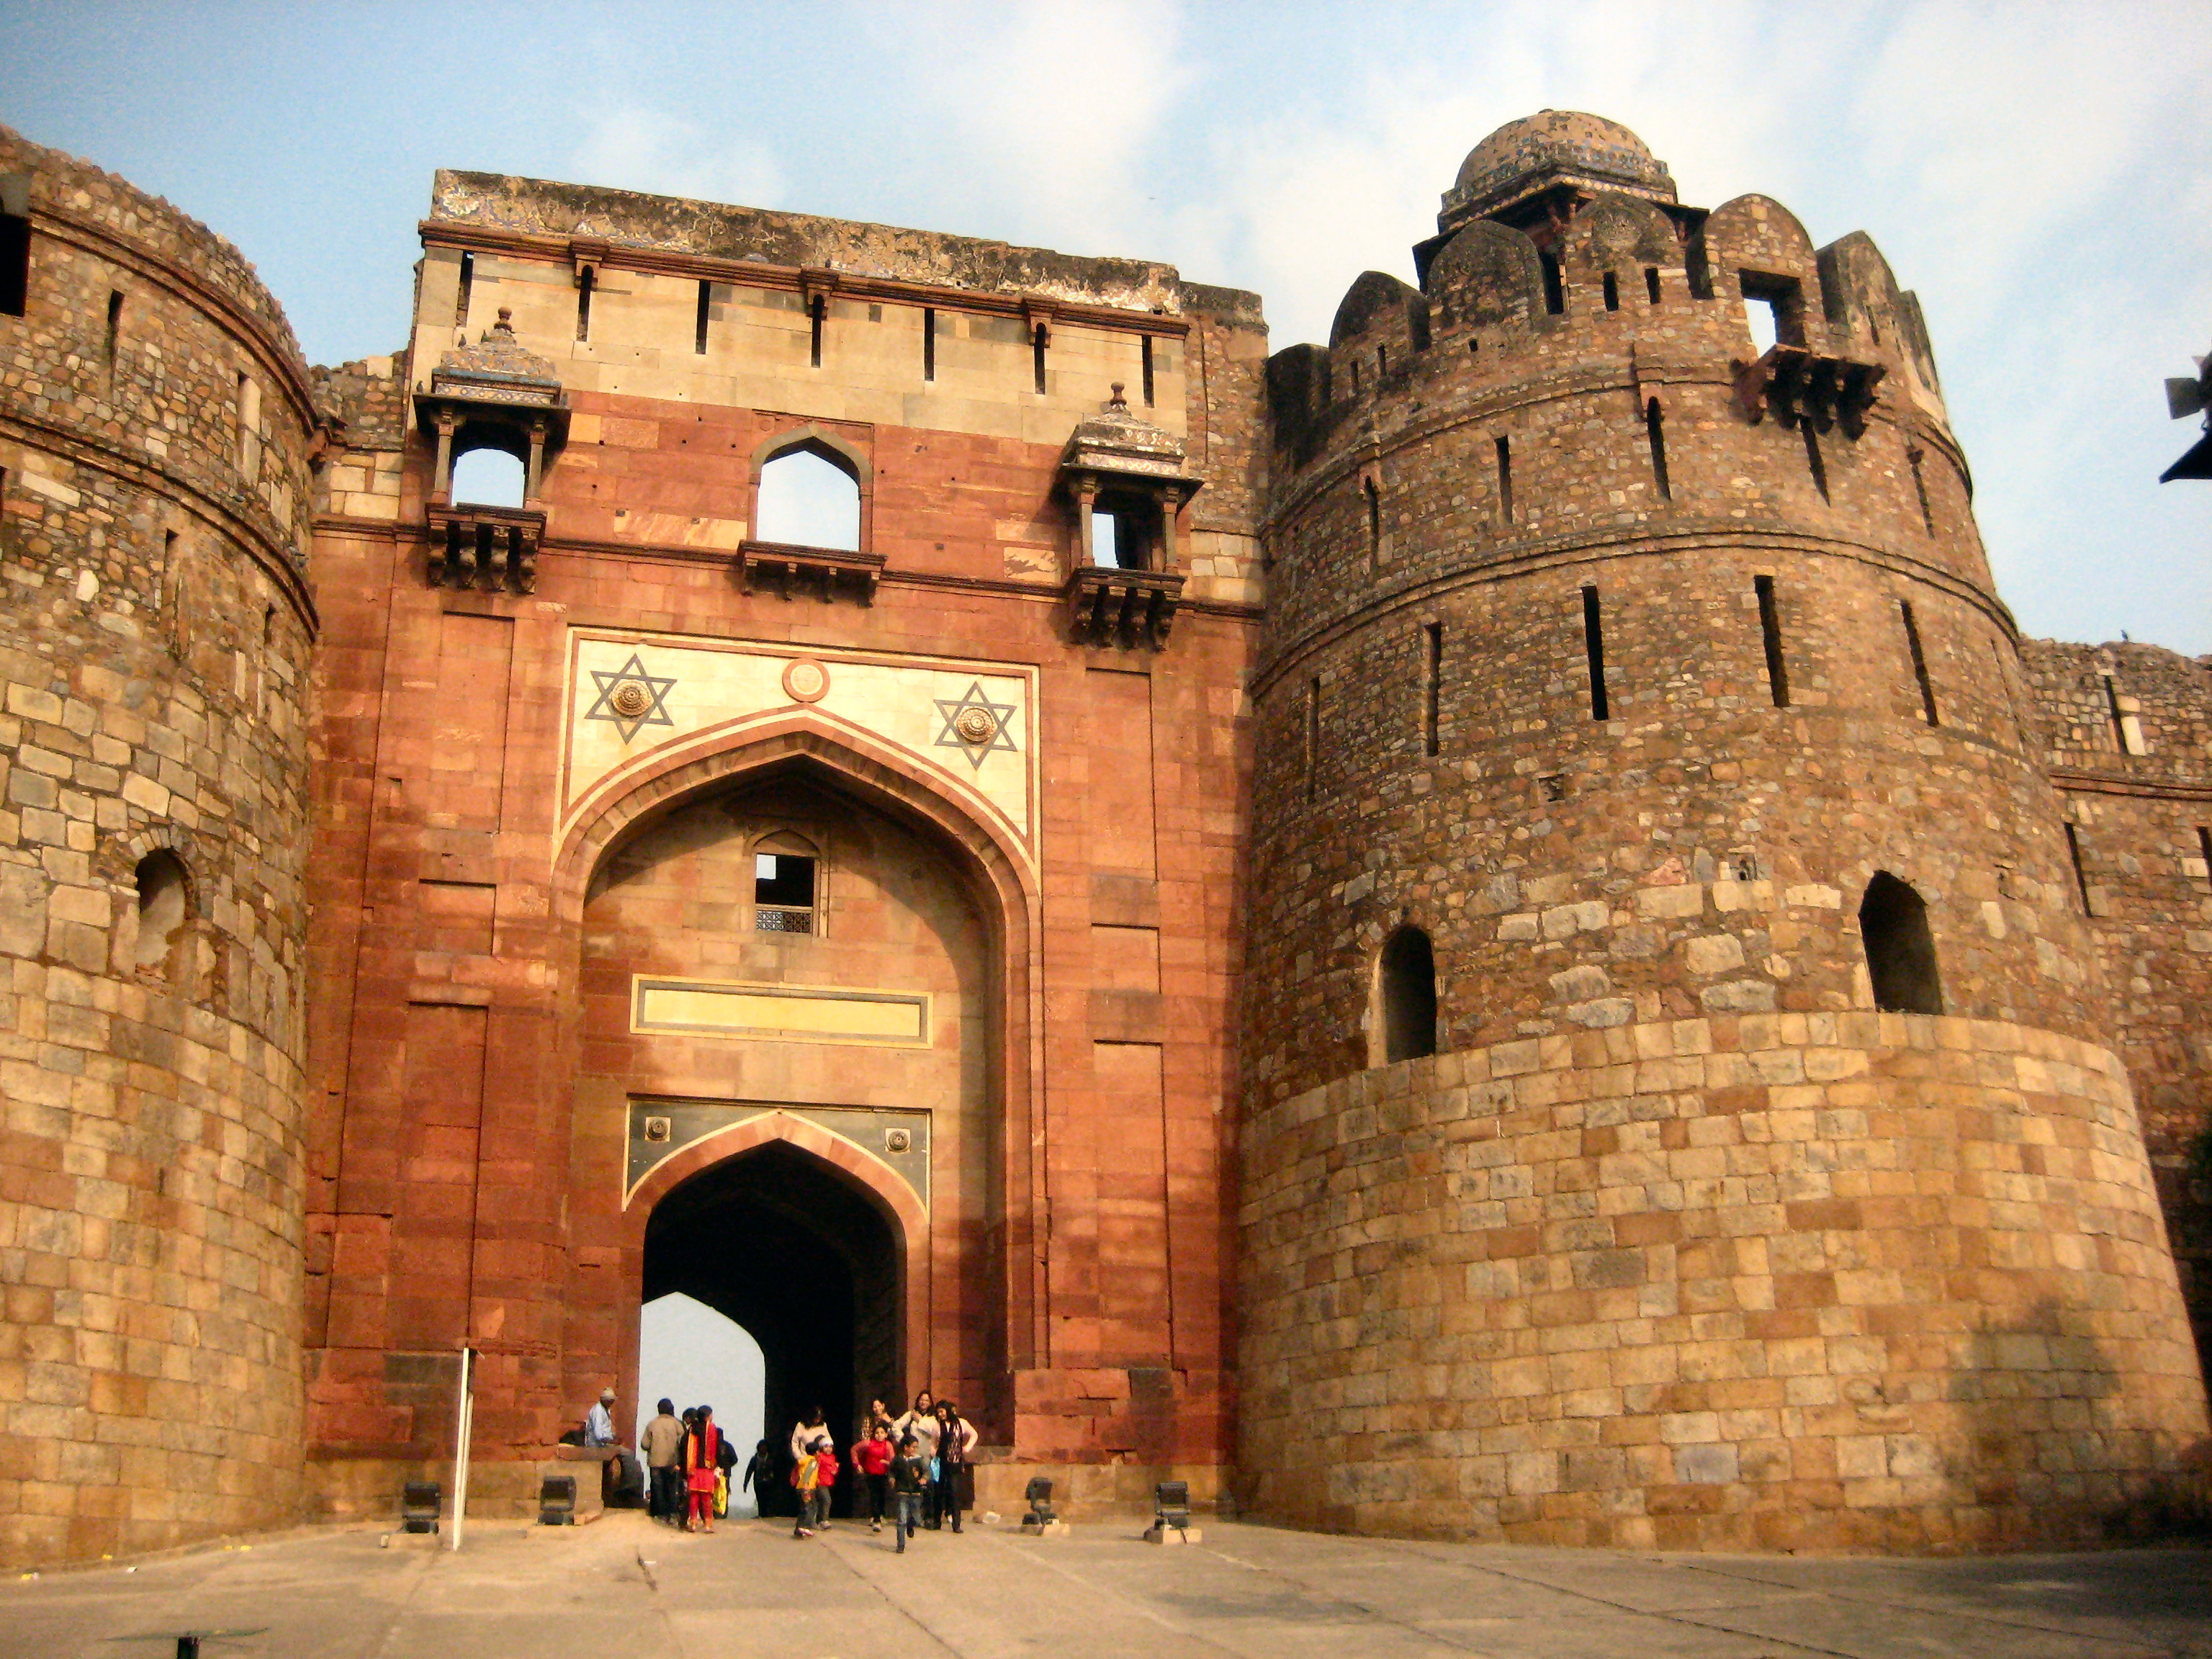 File:Purana Qila, Delhi.jpg - Wikimedia Commons